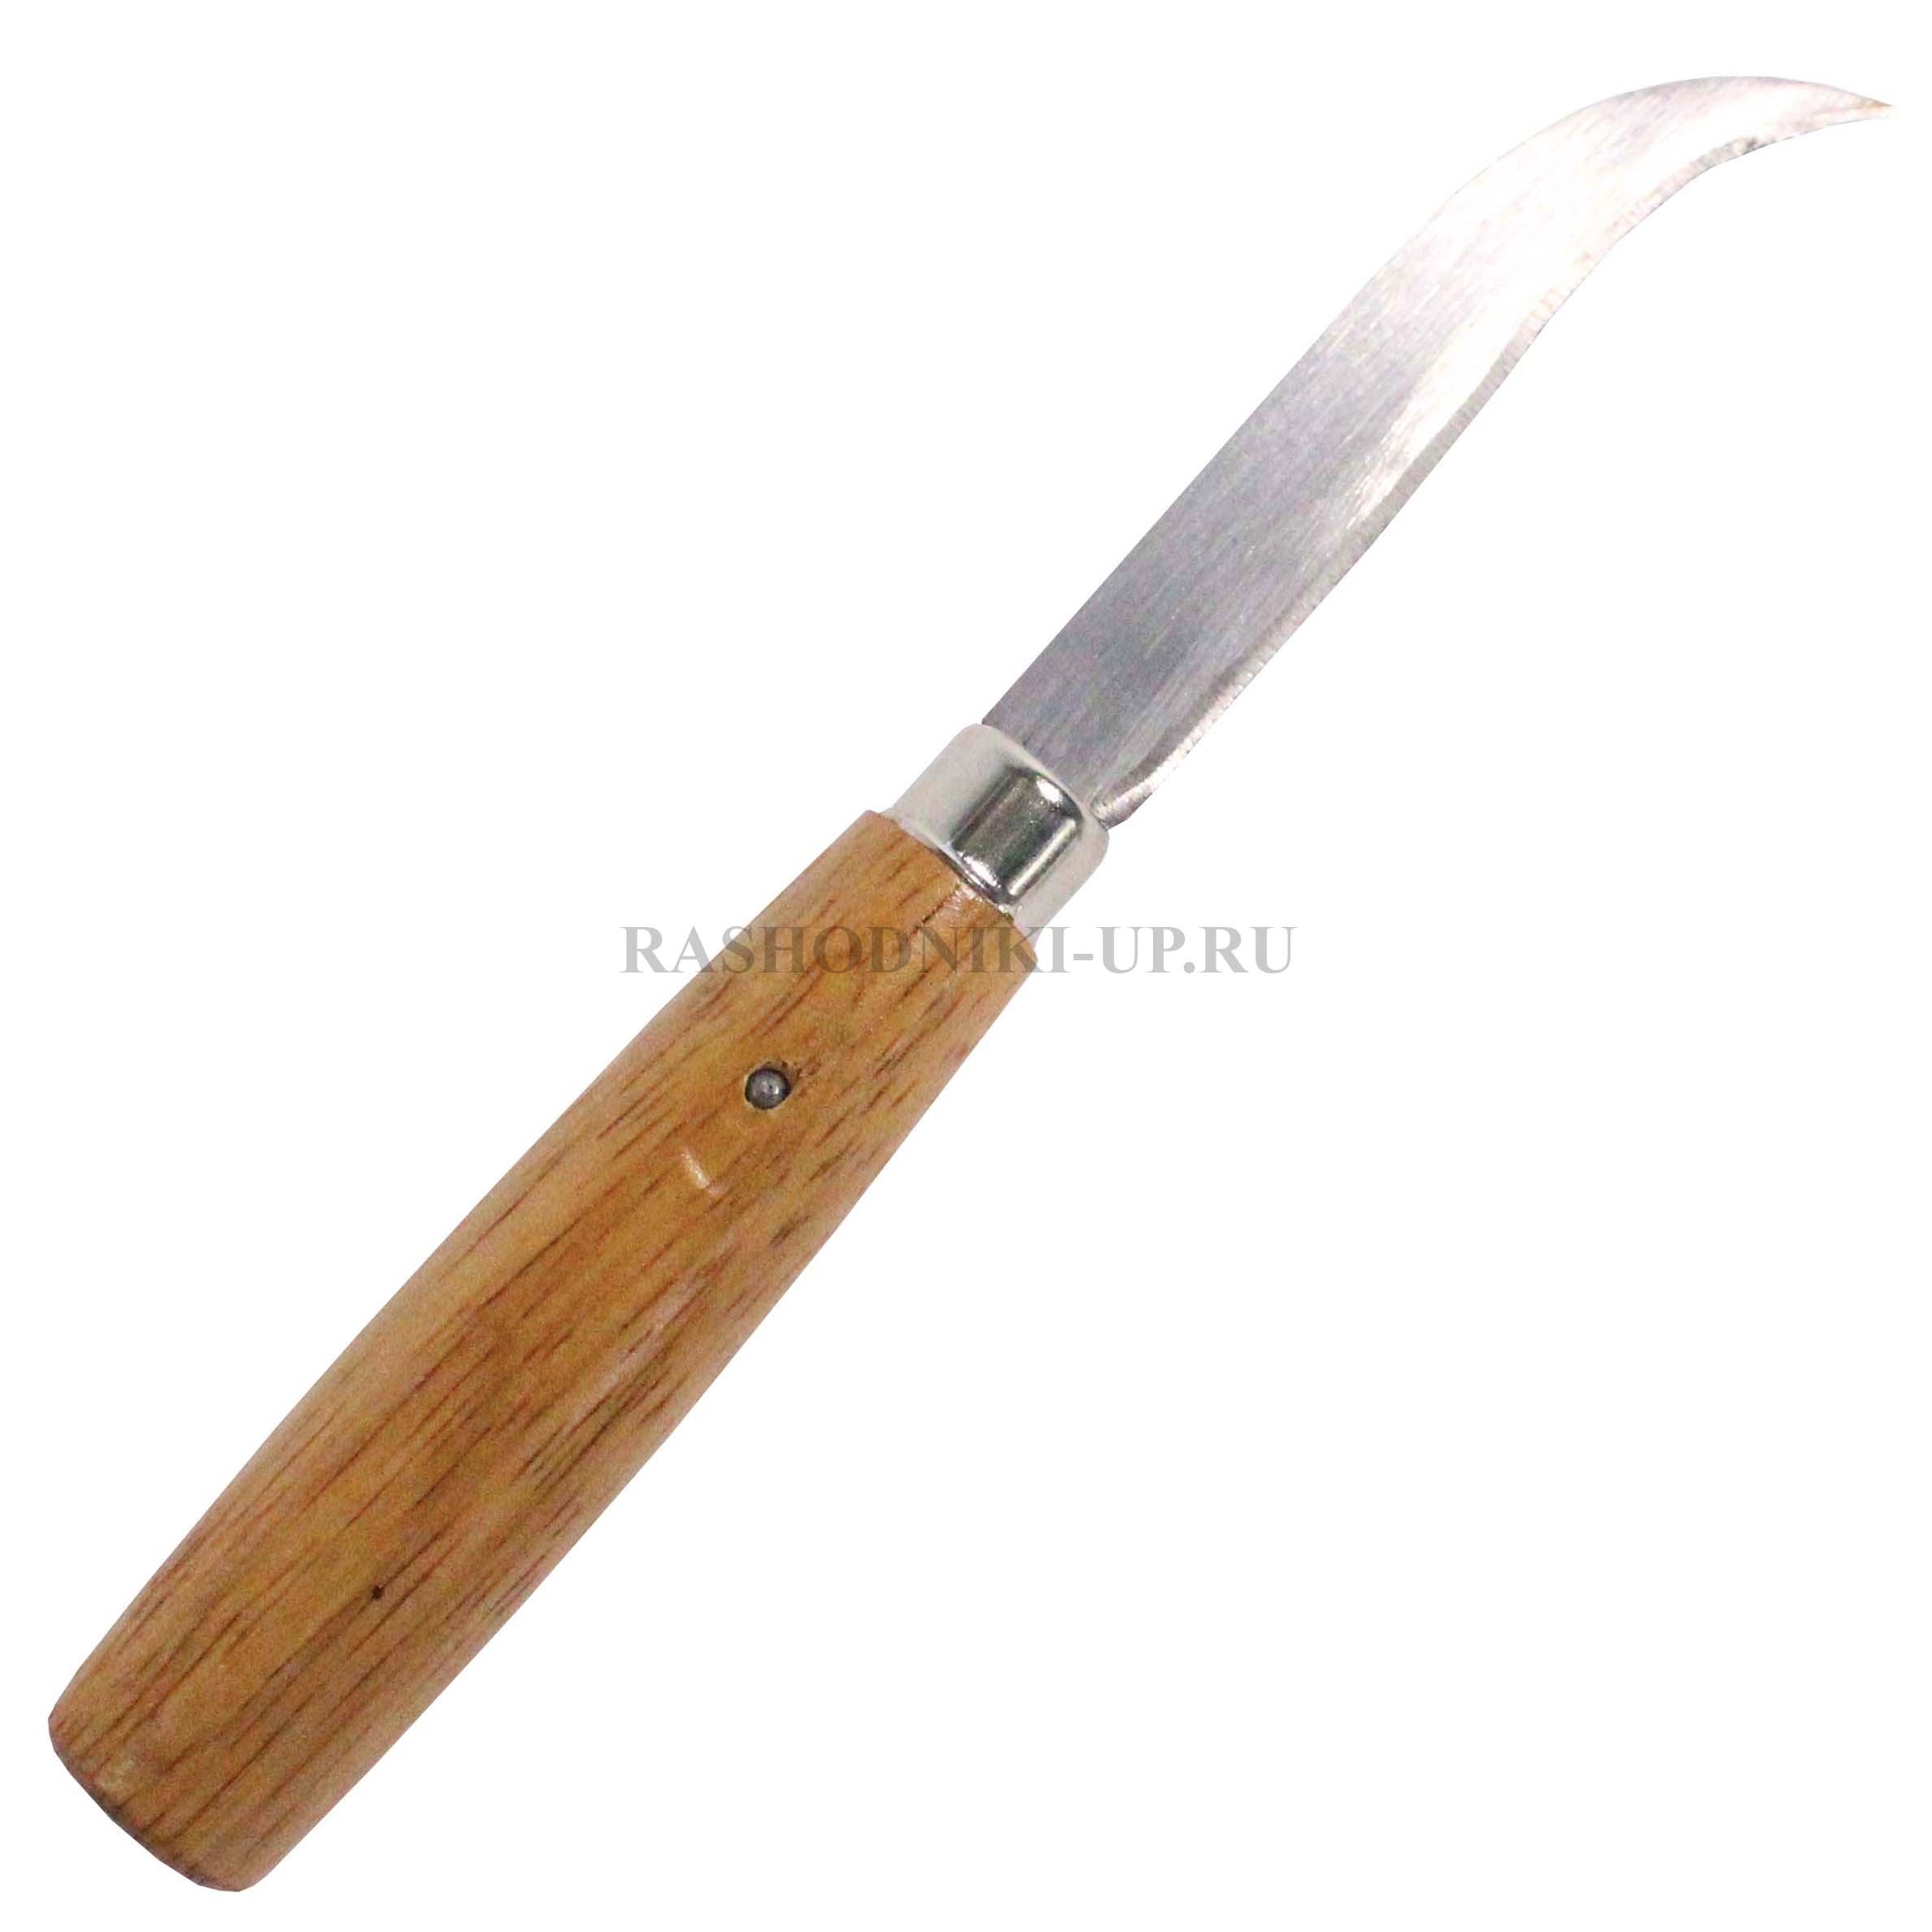 Нож НР-941/X2T серповидный